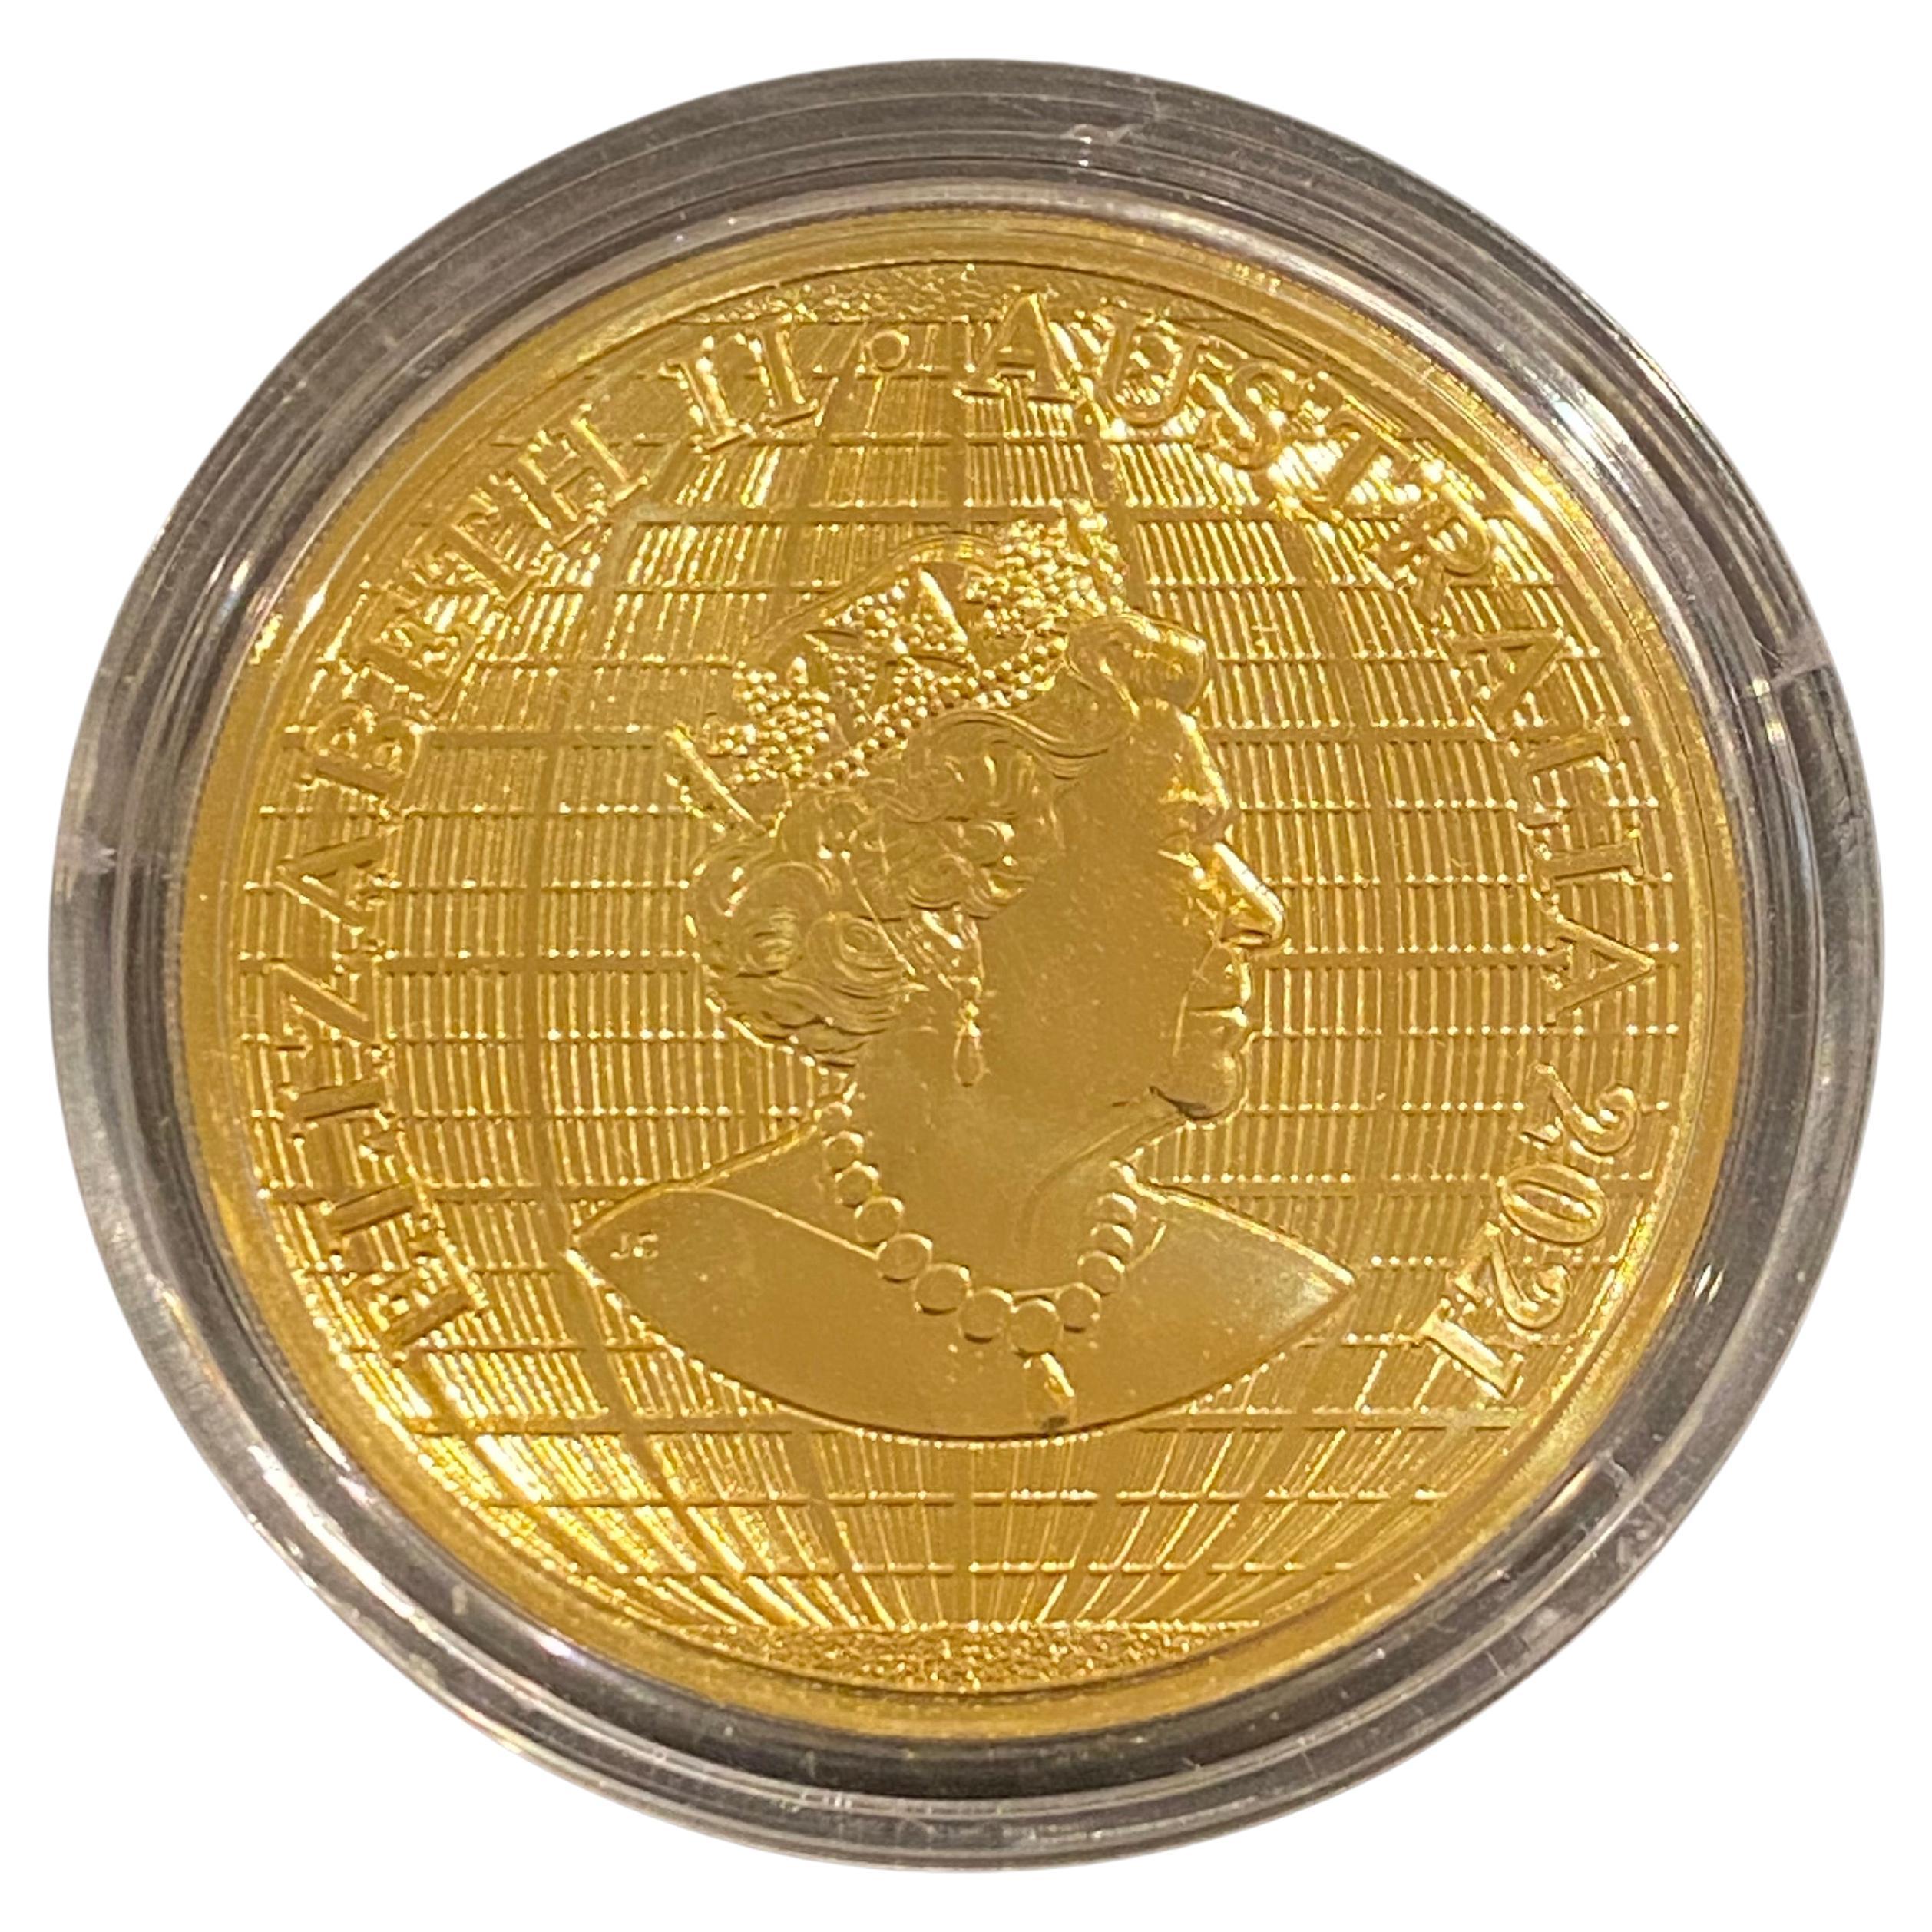 Seltene 1 Unze (OZ) 9999 Gold $100 Australische Münze
